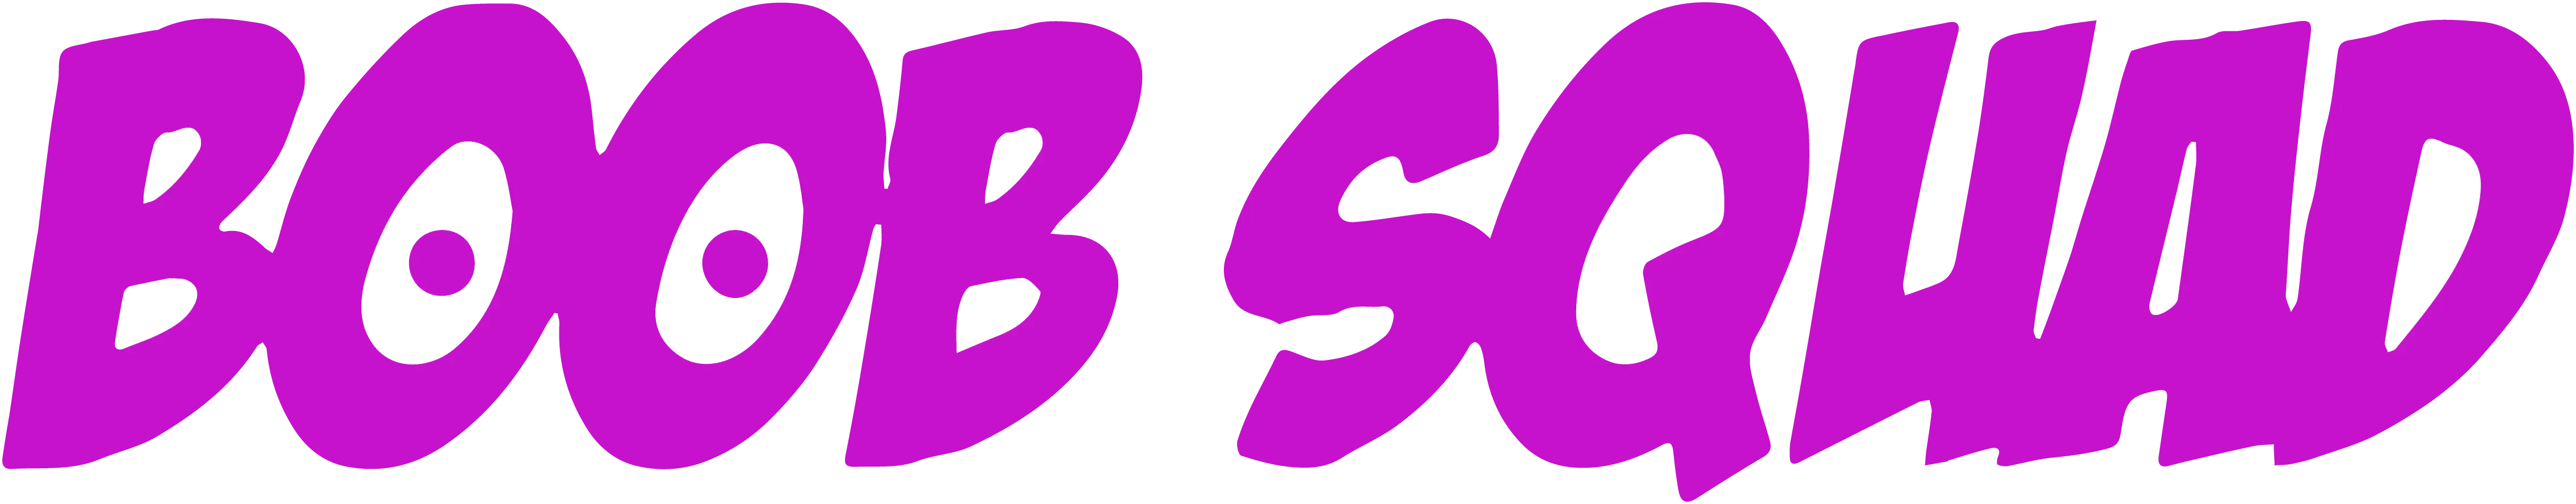 Boob Squad logo